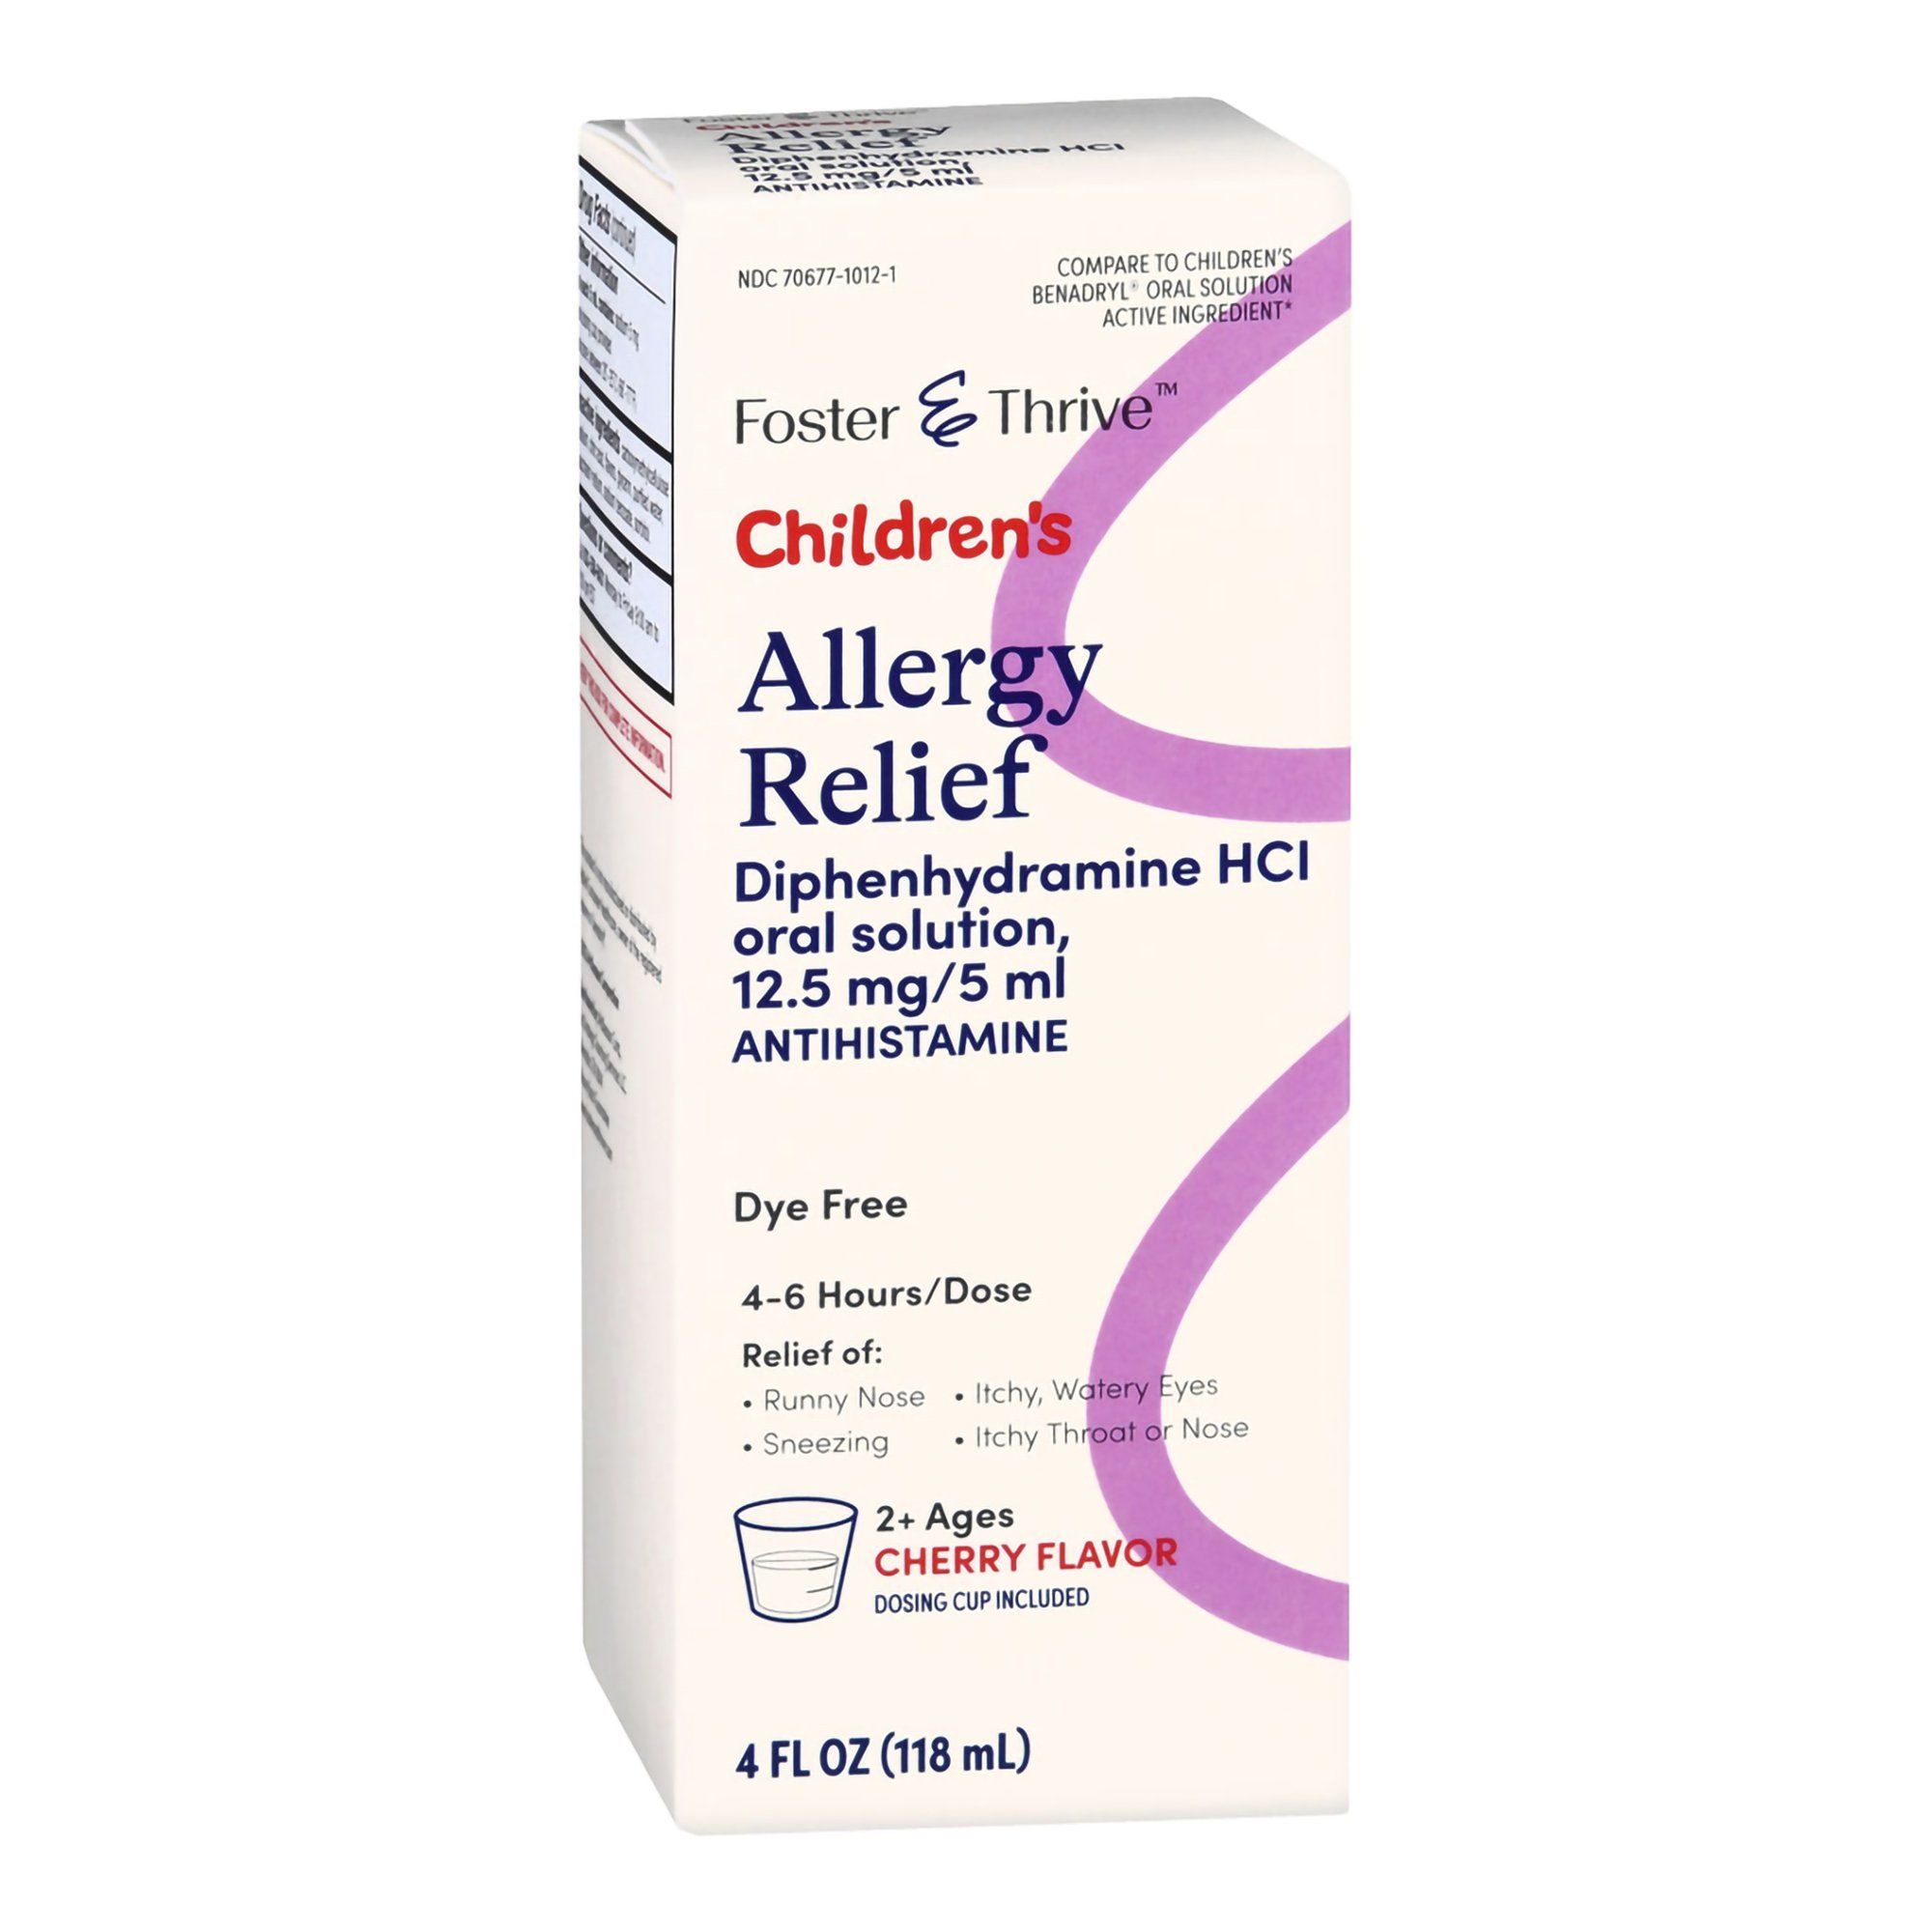 Foster & Thrive Children's Allergy Relief, Cherry - 4 fl oz